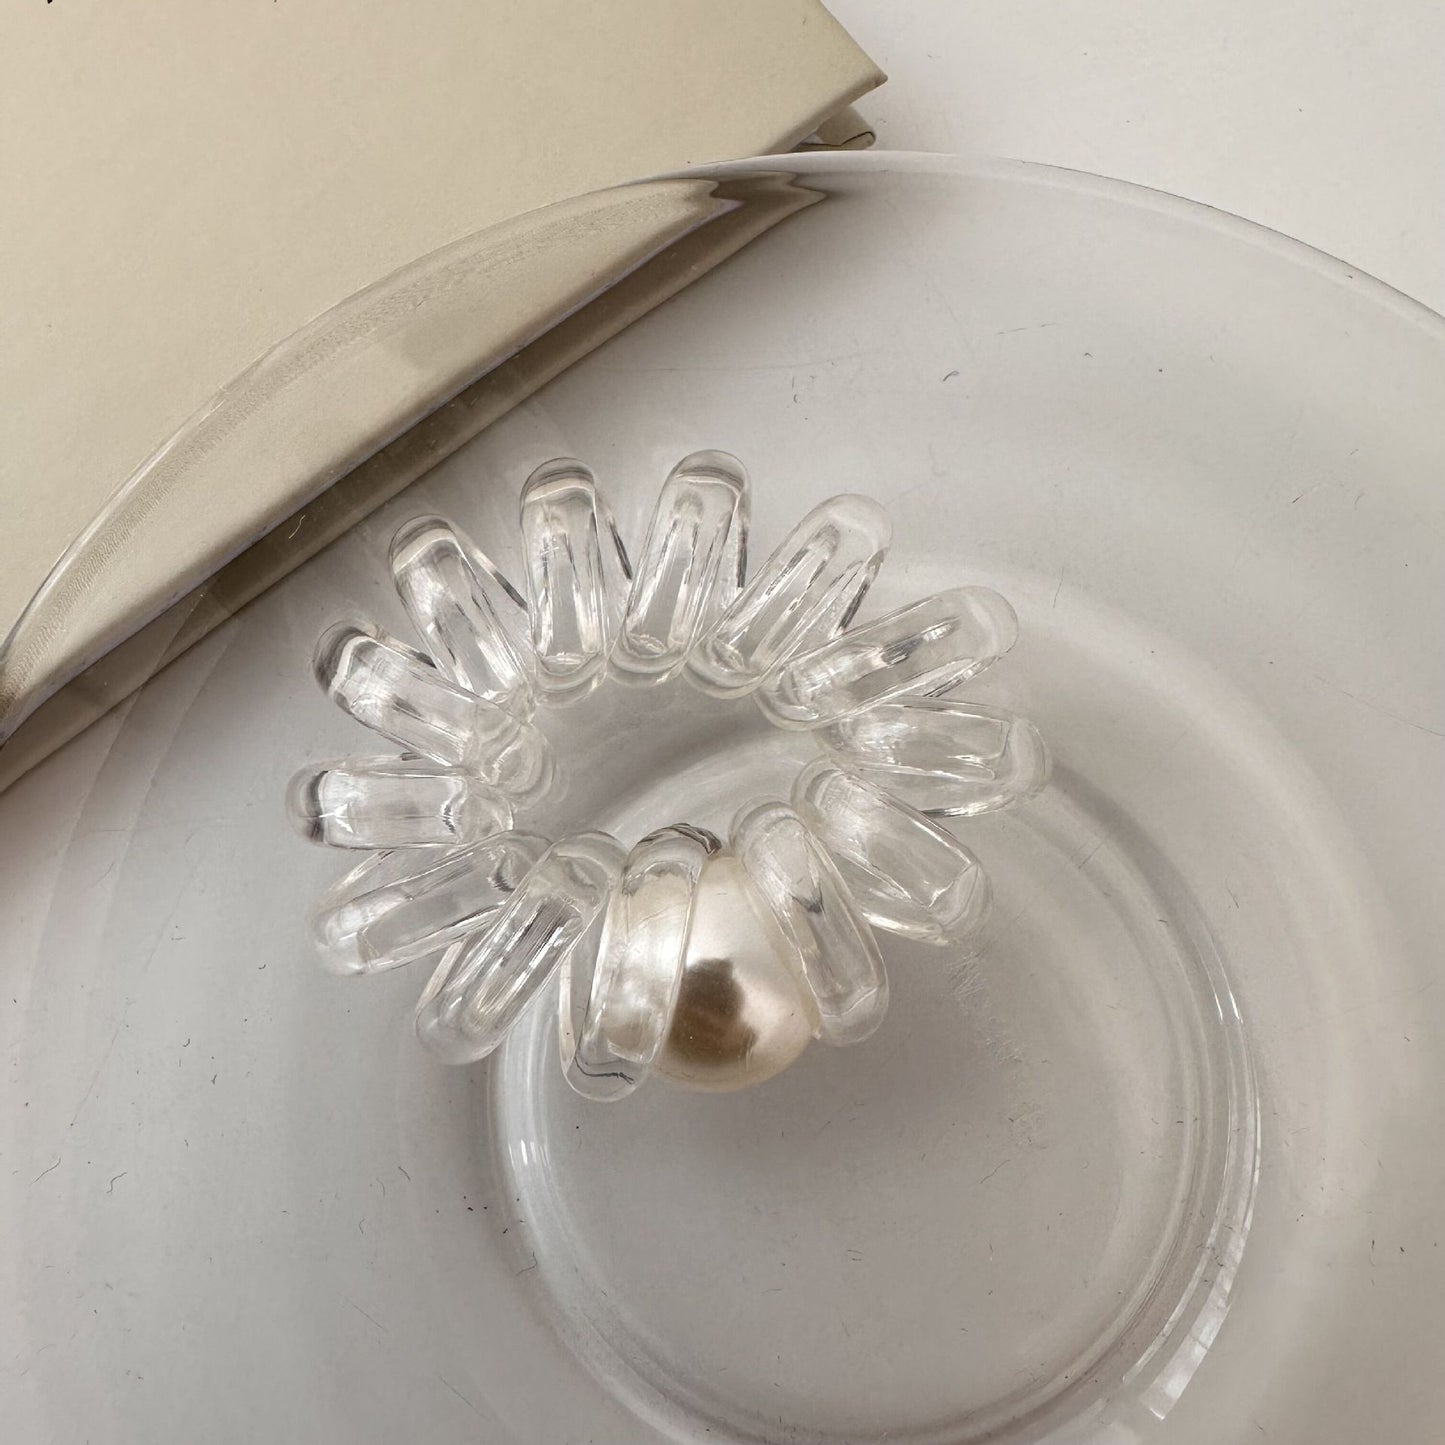 Tlustá průhledná gumička s perlou